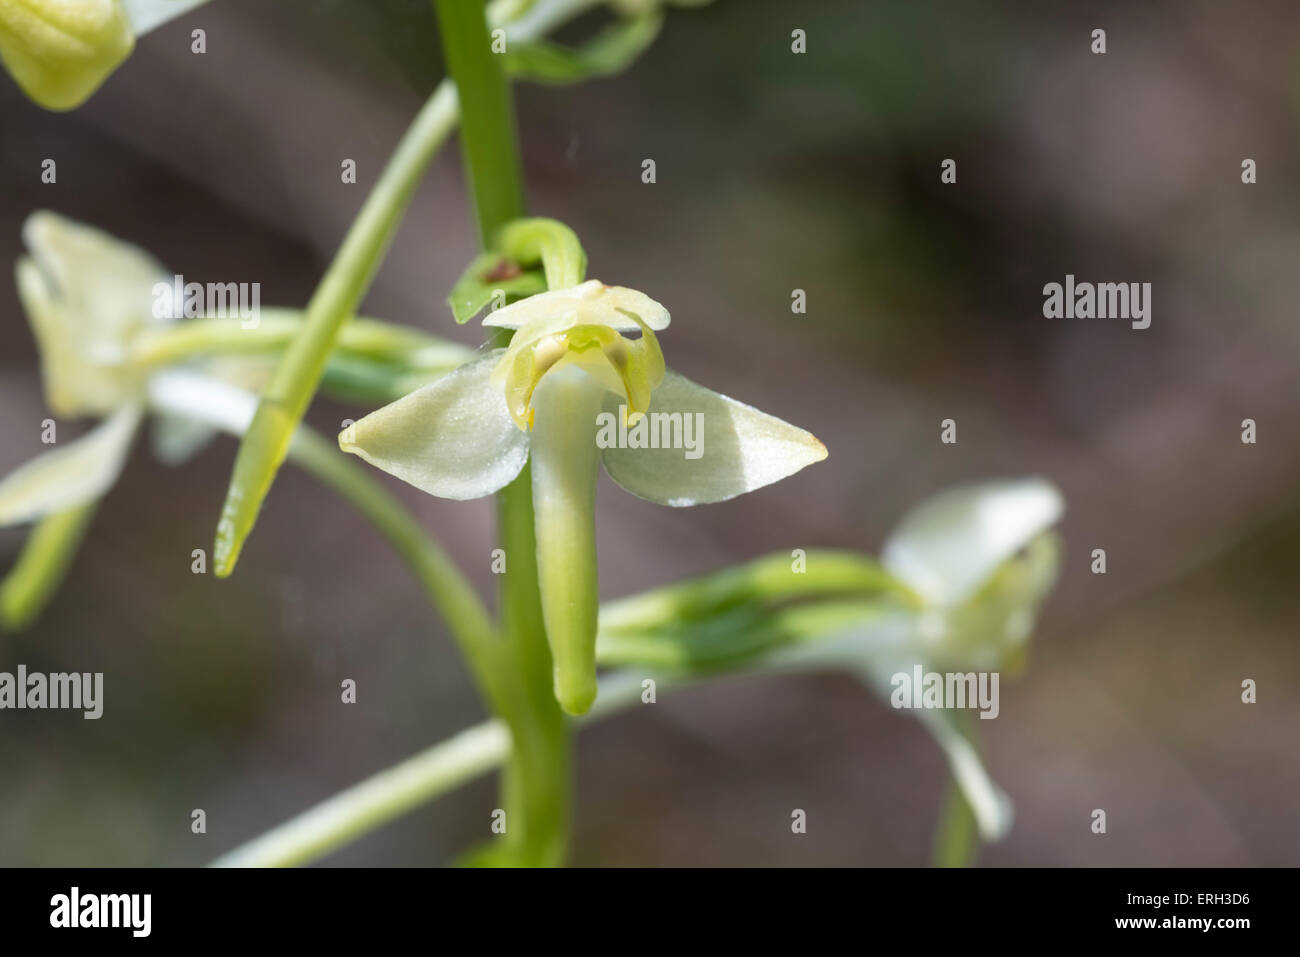 Gros plan d'une platanthère flower montrant le pollinaria largement séparés (sacs polliniques) Banque D'Images